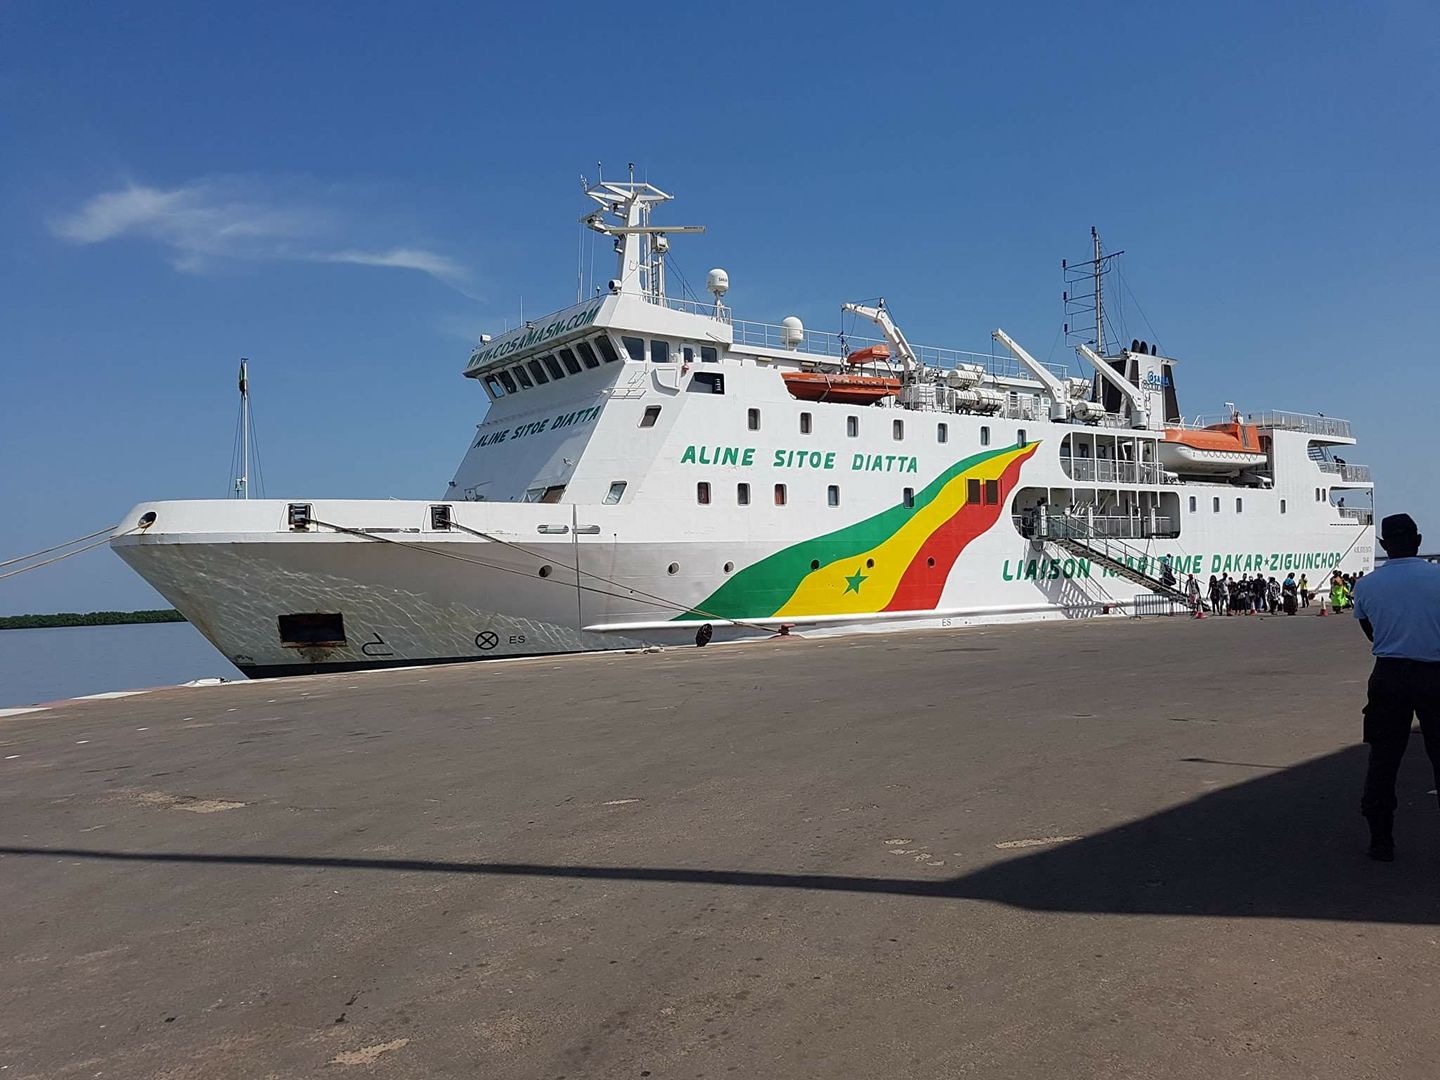 Le cas suspect du bateau Aline Sitoé DIATTA est contrôlé négatif